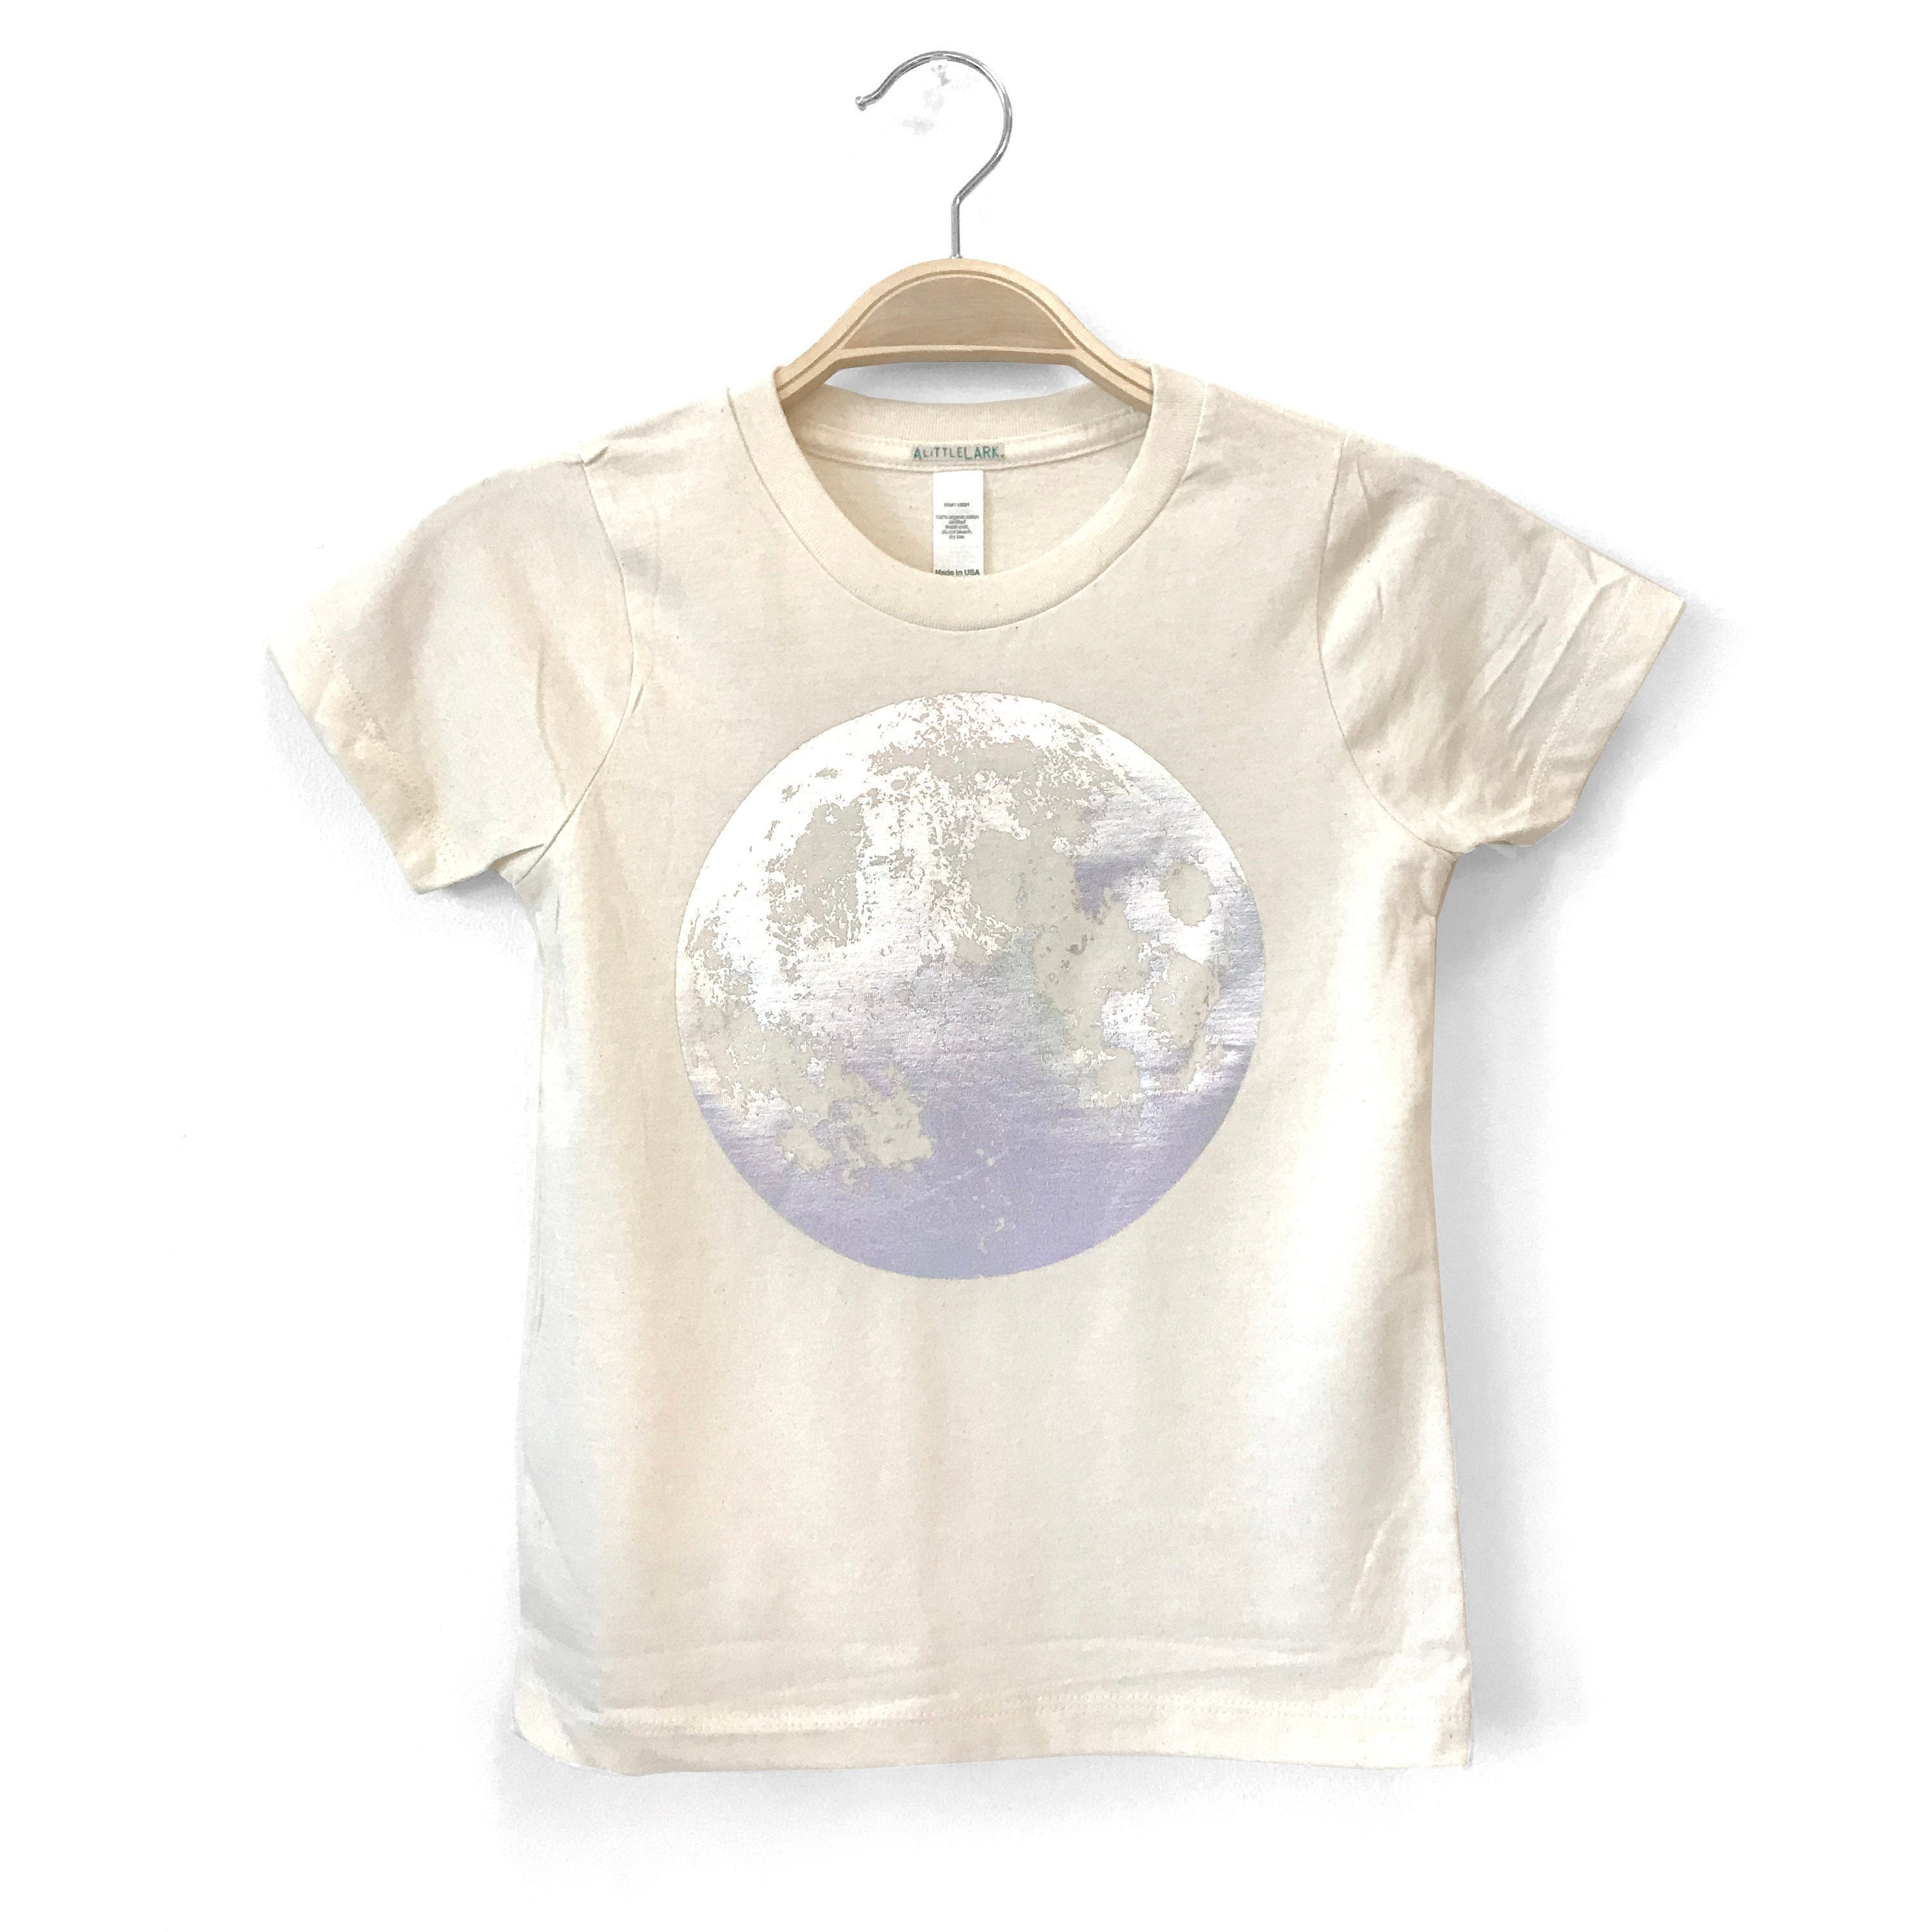 Kleding Unisex kinderkleding Unisex babykleding Tops Kid's Celestial Raccoon en Moon Screen Print T-shirt 